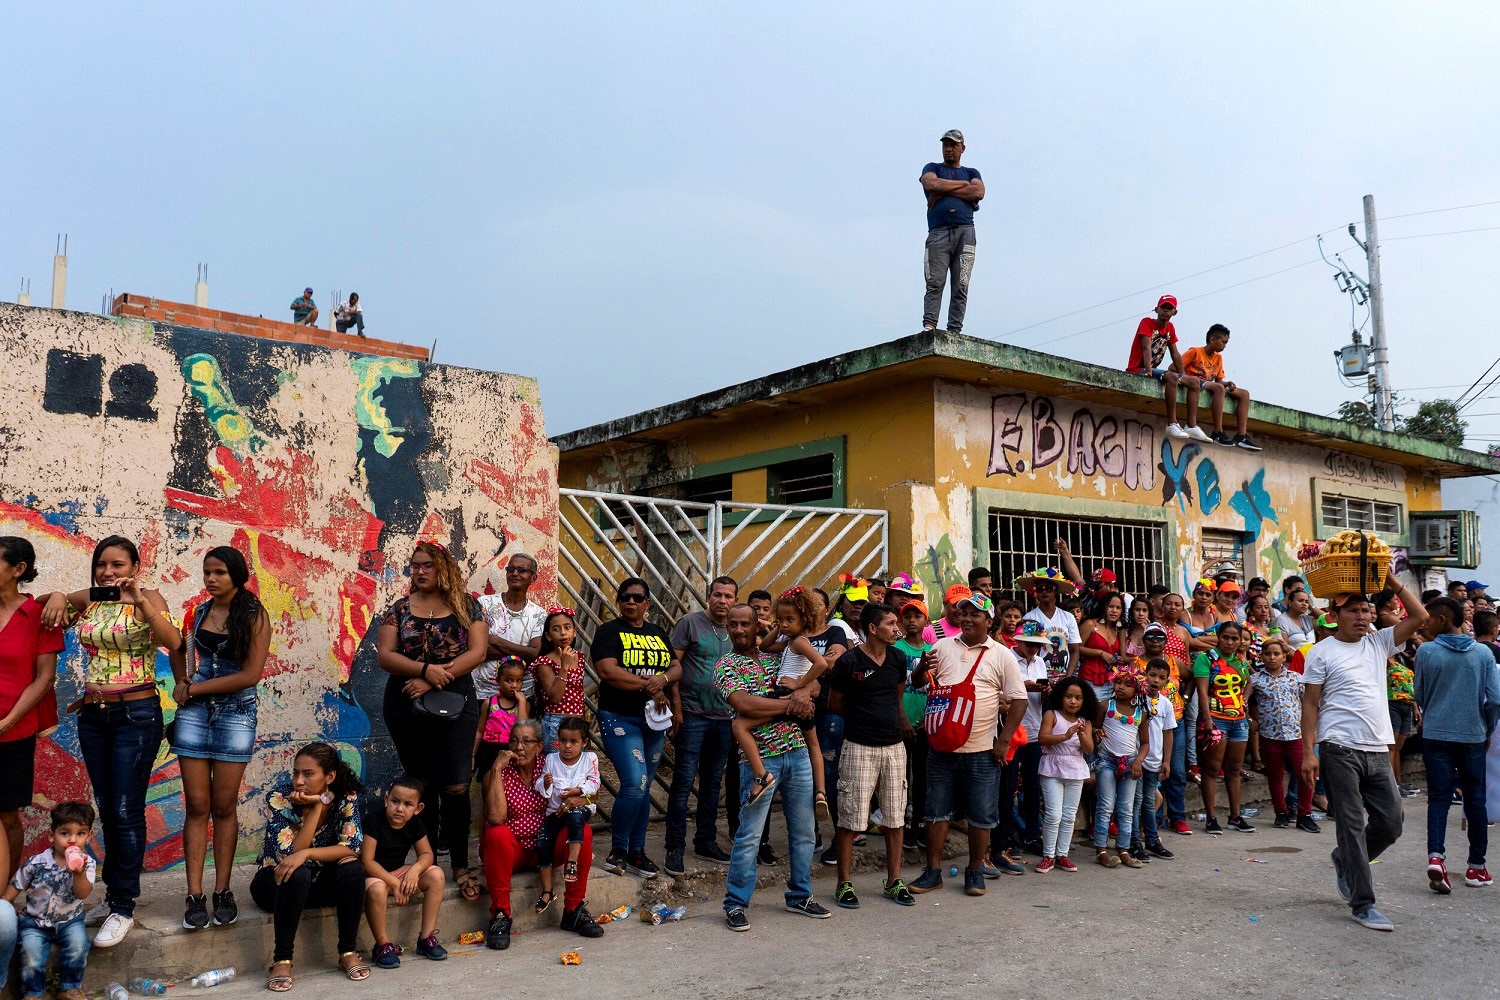 Público del carnaval de Barranquilla, uno de los eventos folclóricos y culturales más importantes de Colombia. CHARLIE CORDERO